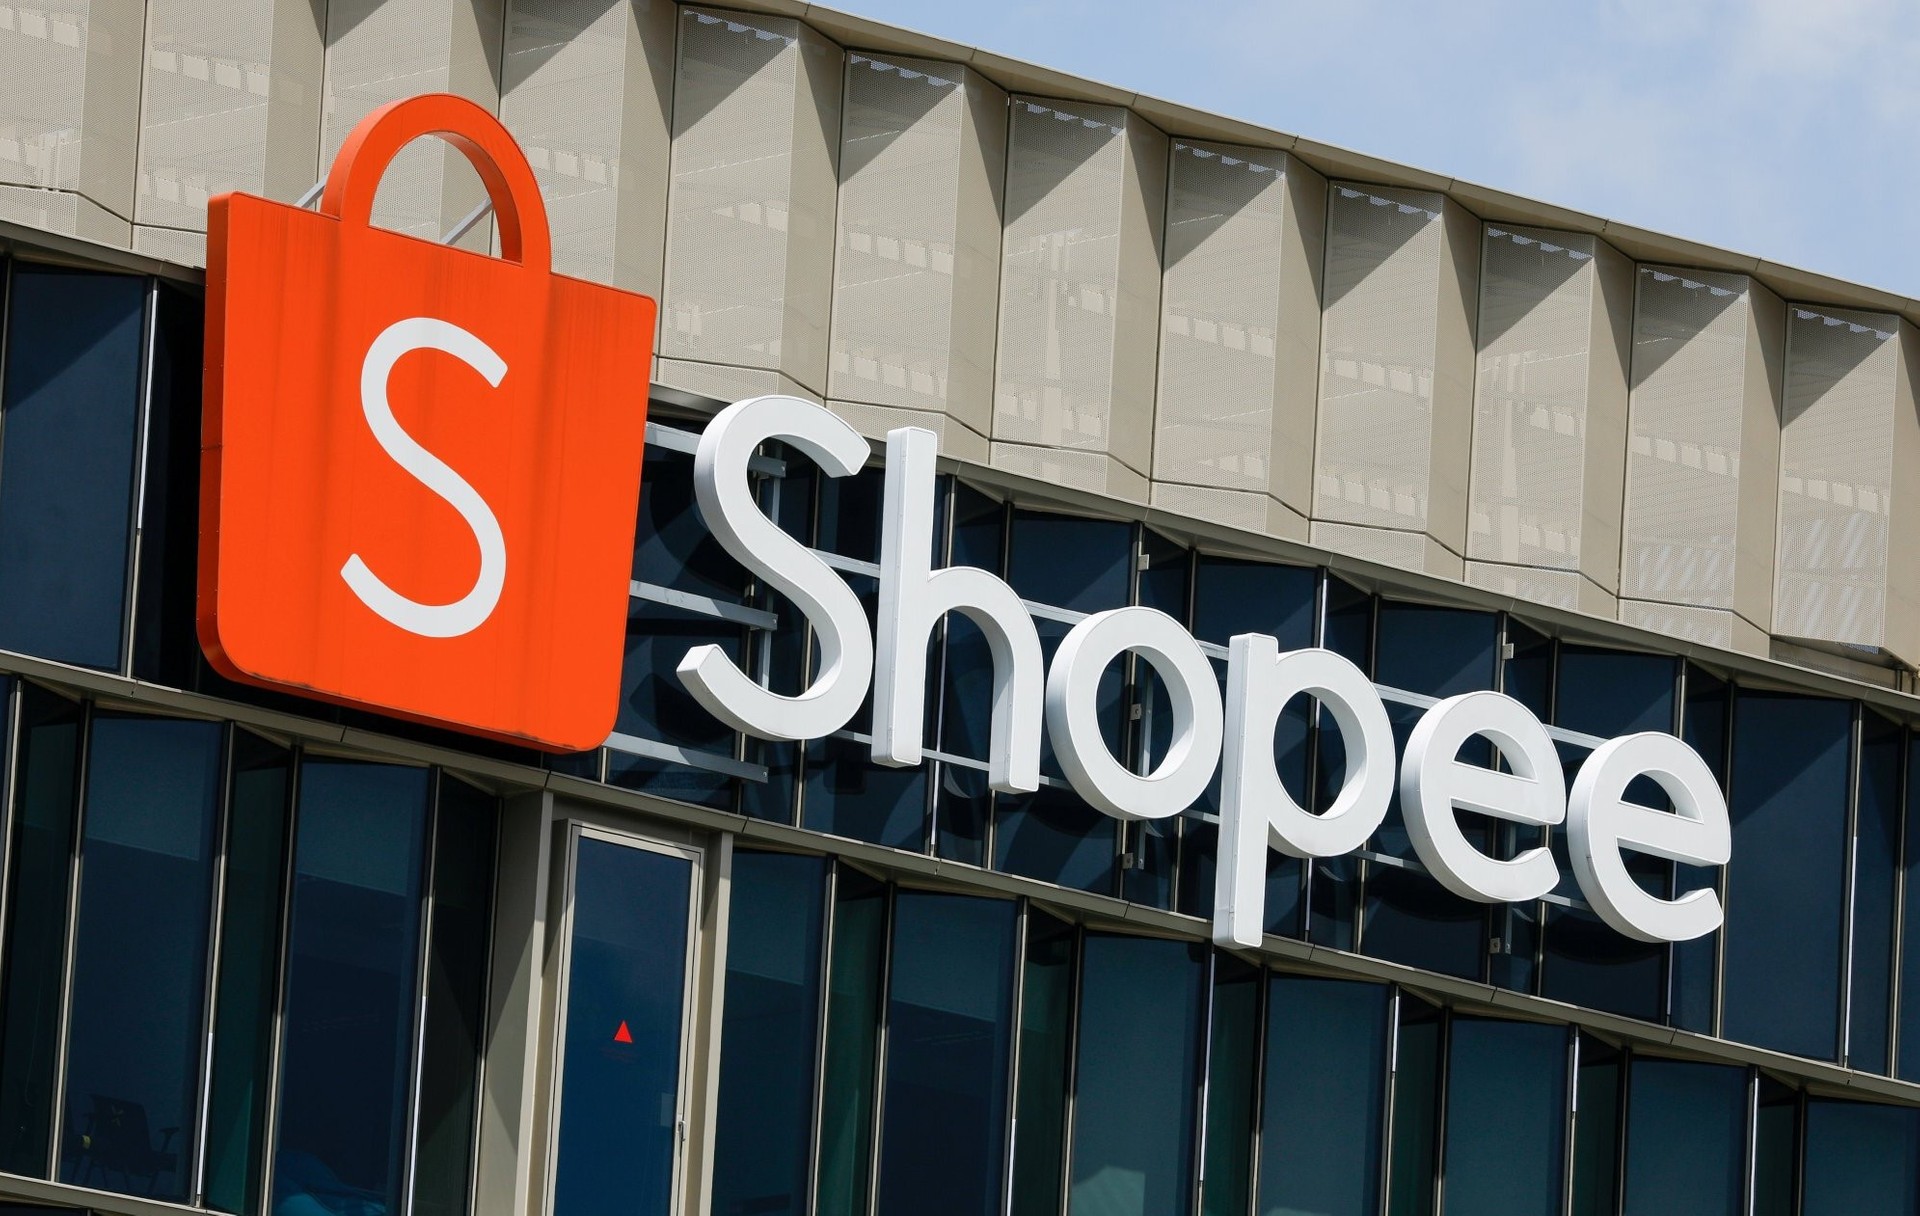 Shopee e Procon-SP assinam termo de colaborao para retirada de produtos ilegais da plataforma